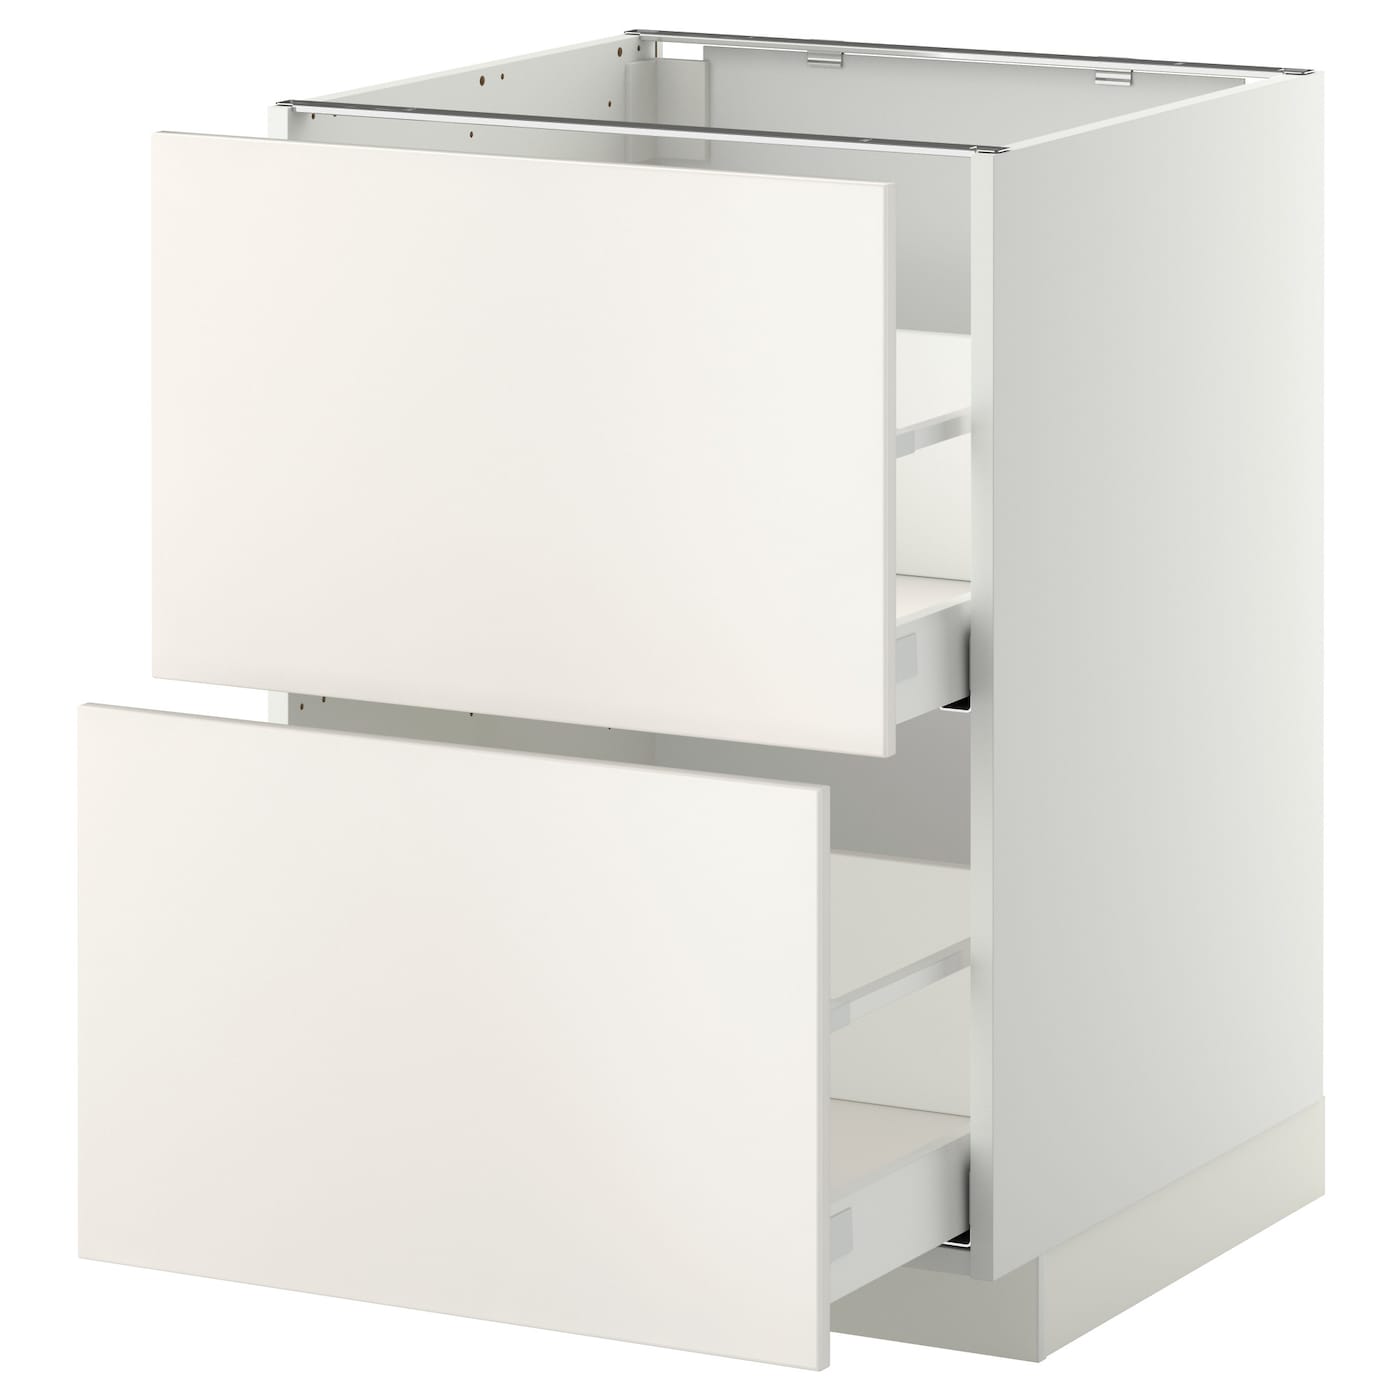 Напольный кухонный шкаф  - IKEA METOD MAXIMERA, 88x61,6x60см, белый, МЕТОД МАКСИМЕРА ИКЕА